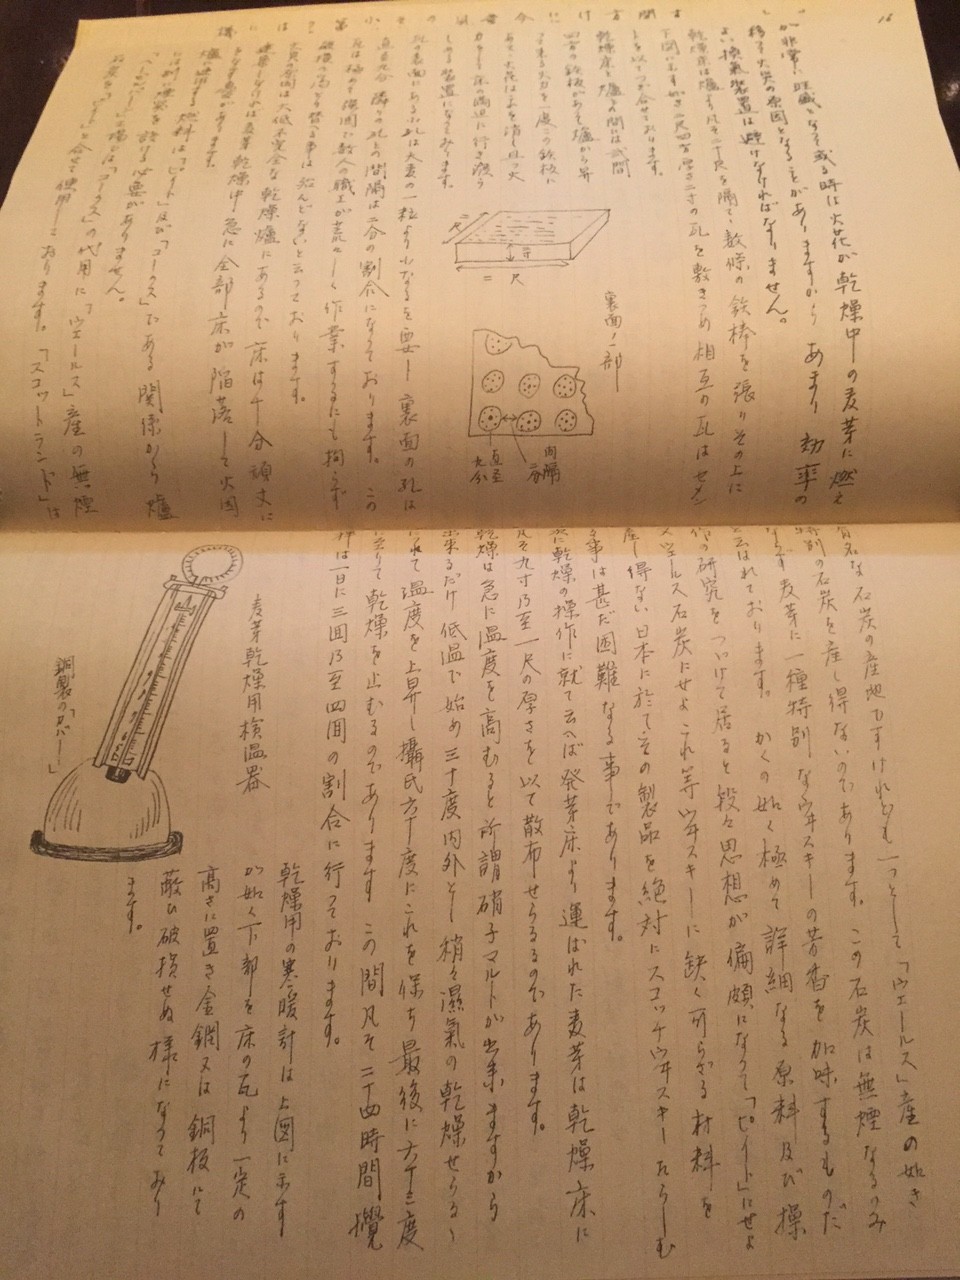 竹鶴ノート」の復刻版を入手しました！ | 燻製 BAR オリオン